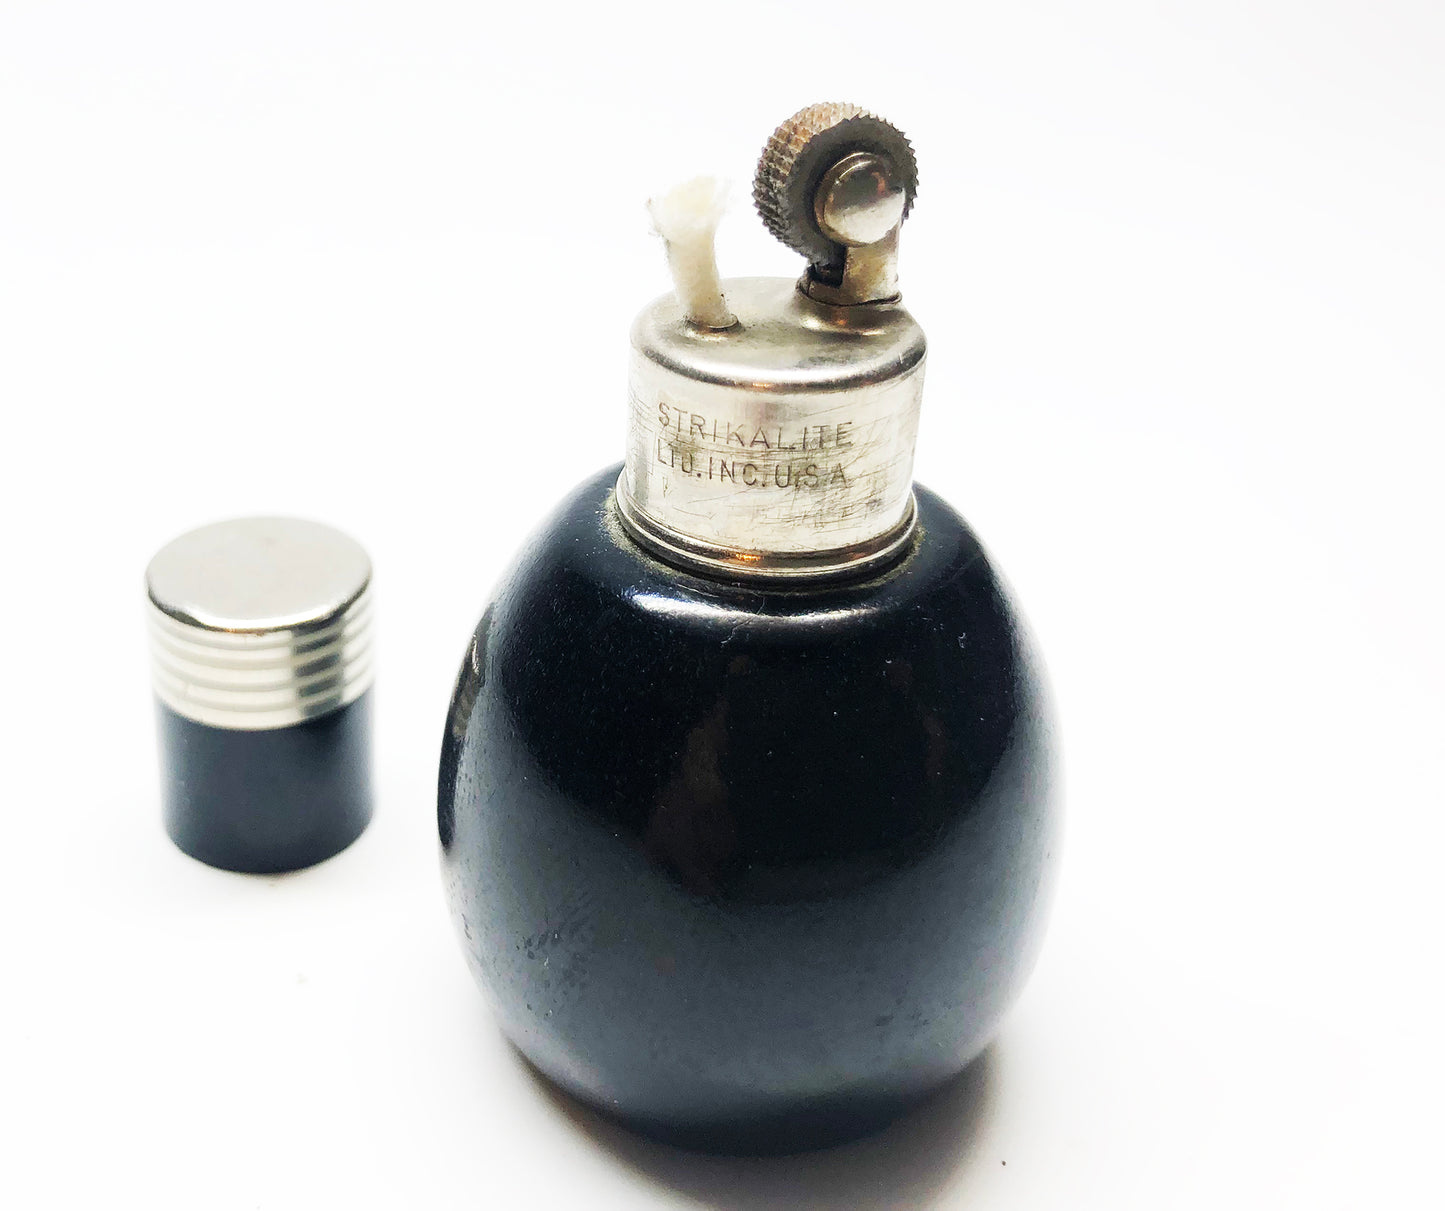 Strikalite 1920s Working Black Bakelite Lighter